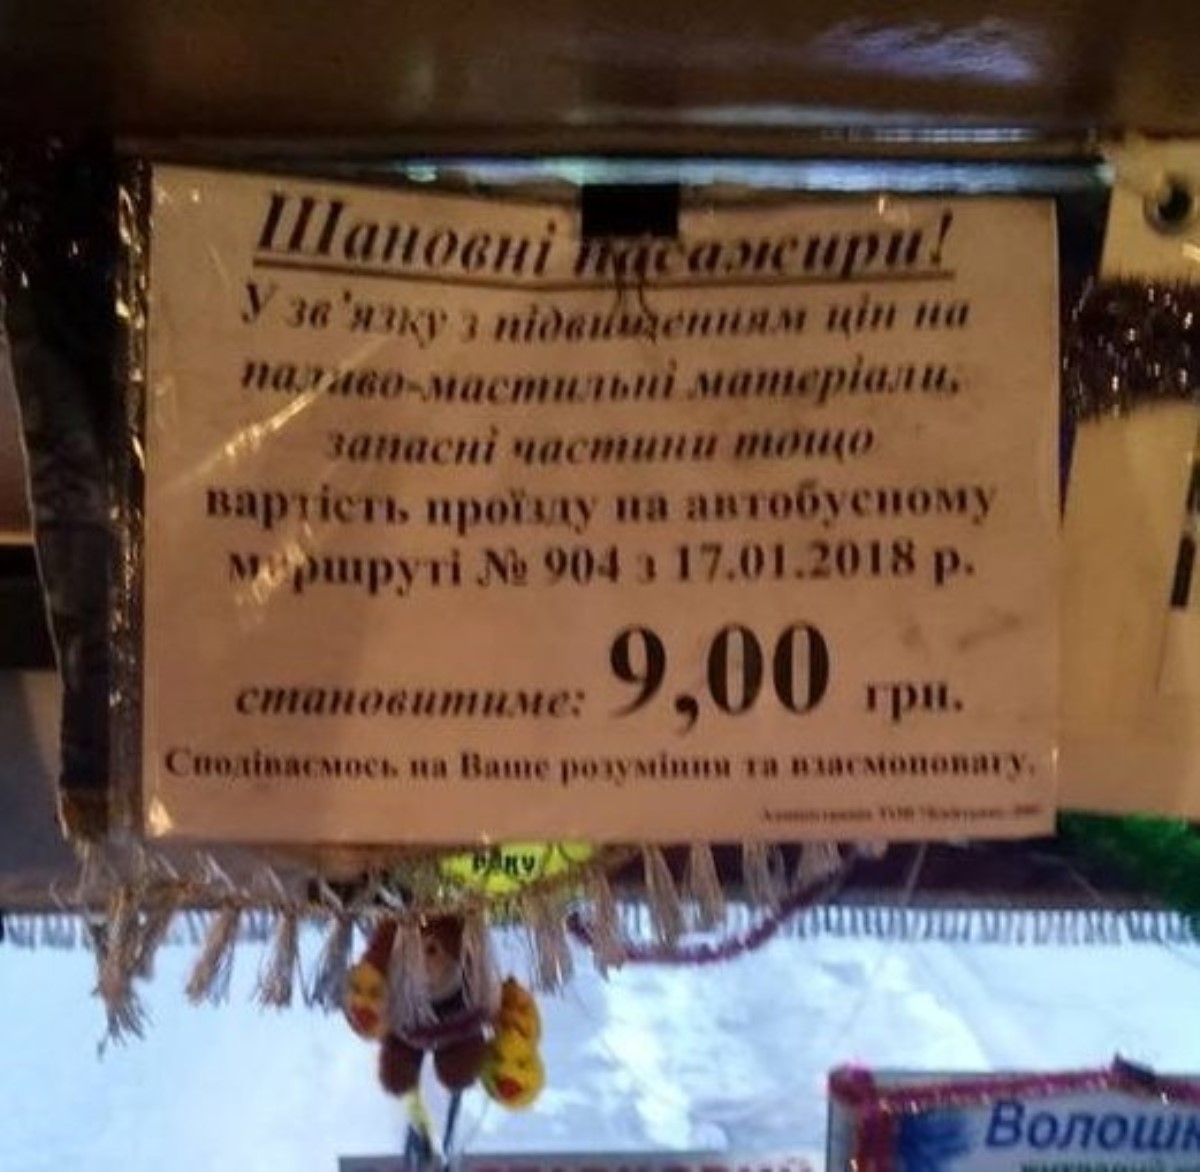 "Оборзели вкрай": киевлян шокировали новые цены на проезд в маршрутках